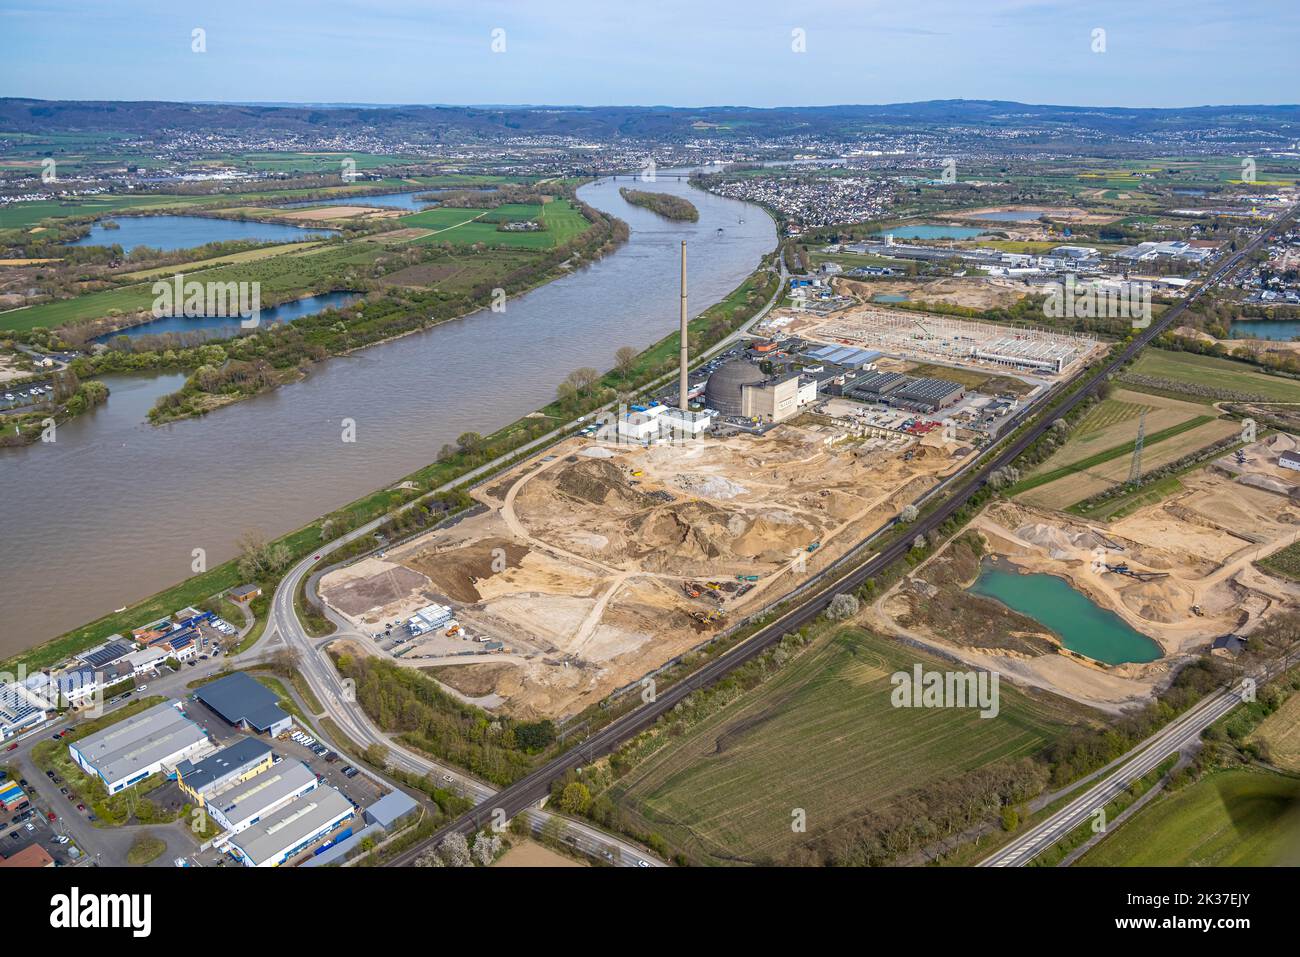 Vista aérea, central nuclear KKW Mülheim-Kärlich en el río Rin con trabajos de deconstrucción y demolición, antigua central nuclear, decommissi Foto de stock